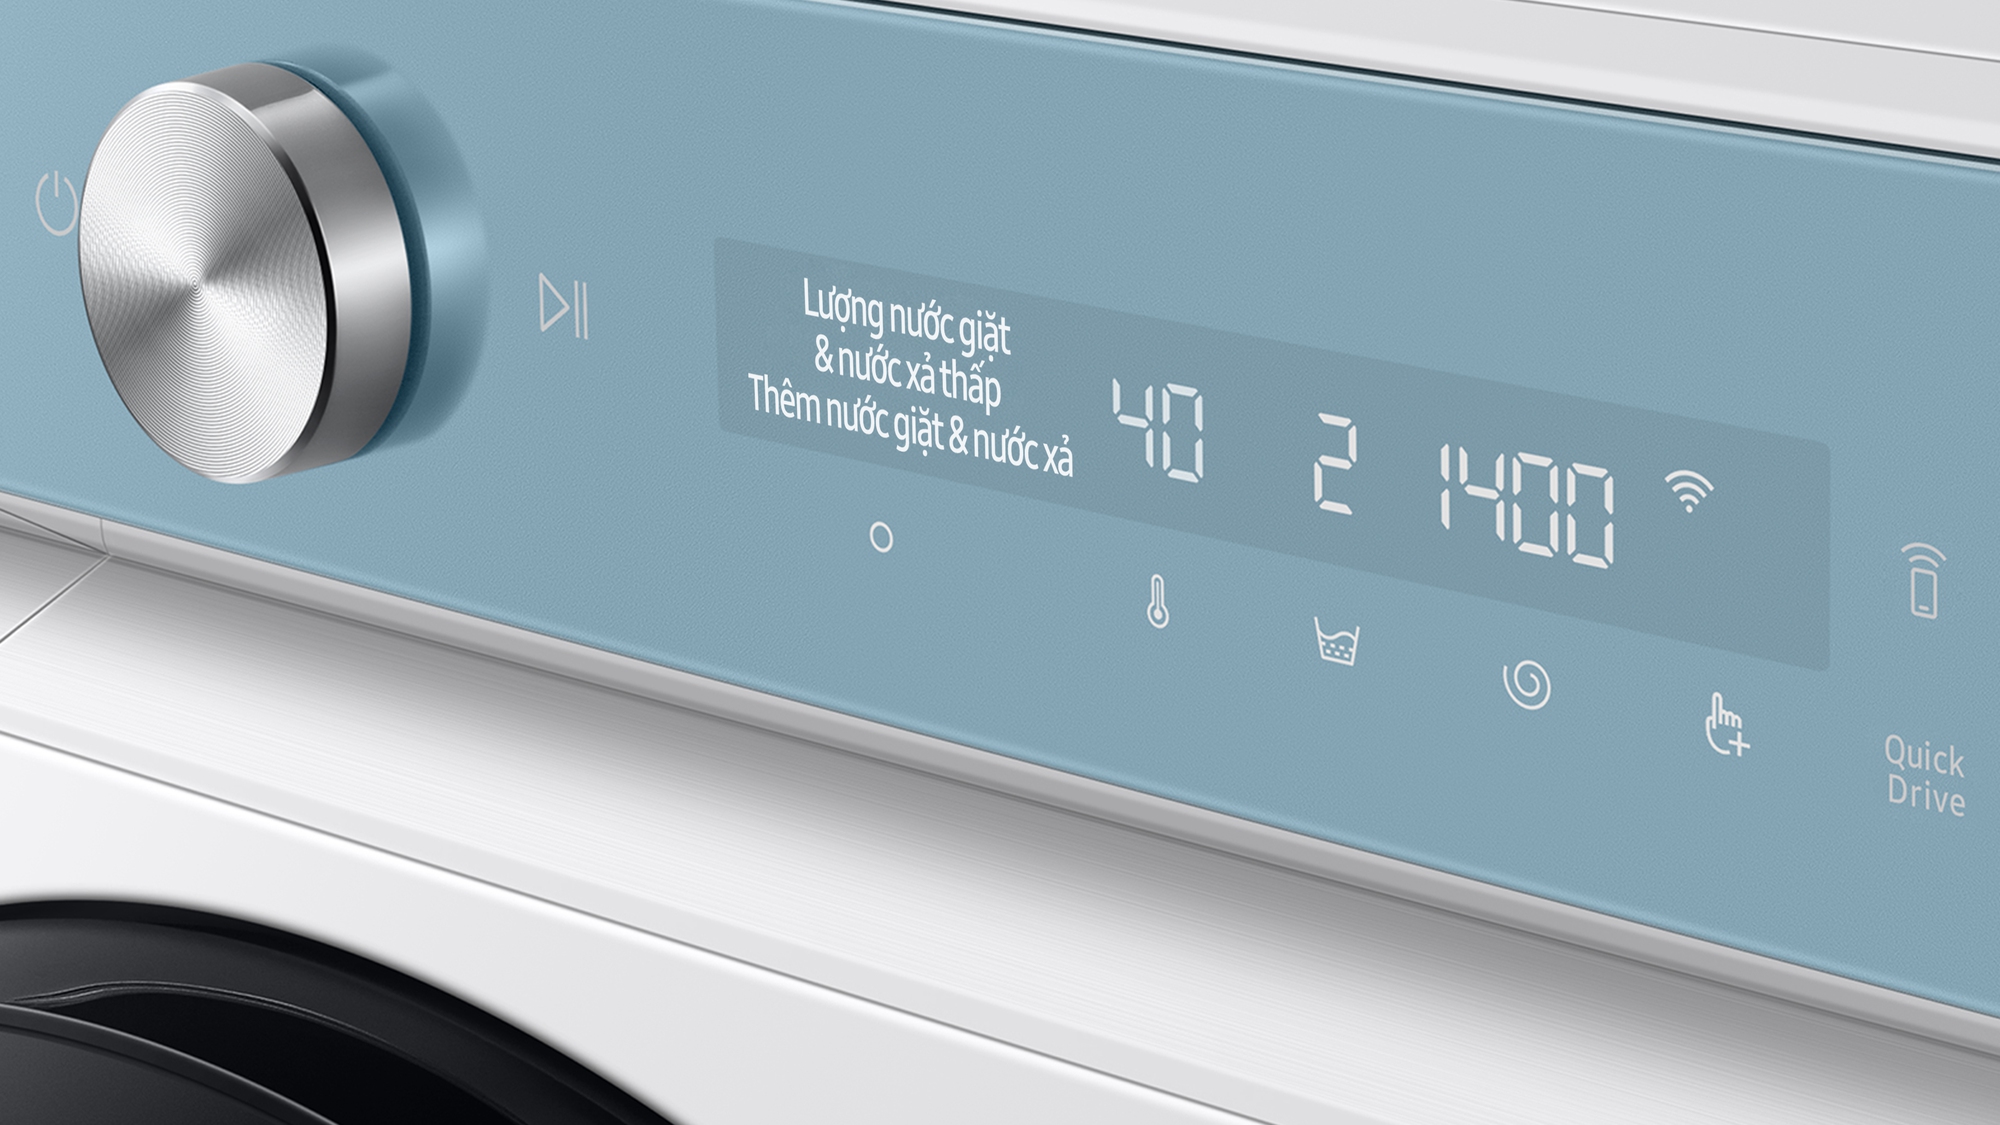 Máy giặt thông minh Samsung Bespoke AI ra mắt: Vừa phân biệt chất liệu vải, vừa tự động tính lượng nước giặt - Ảnh 3.